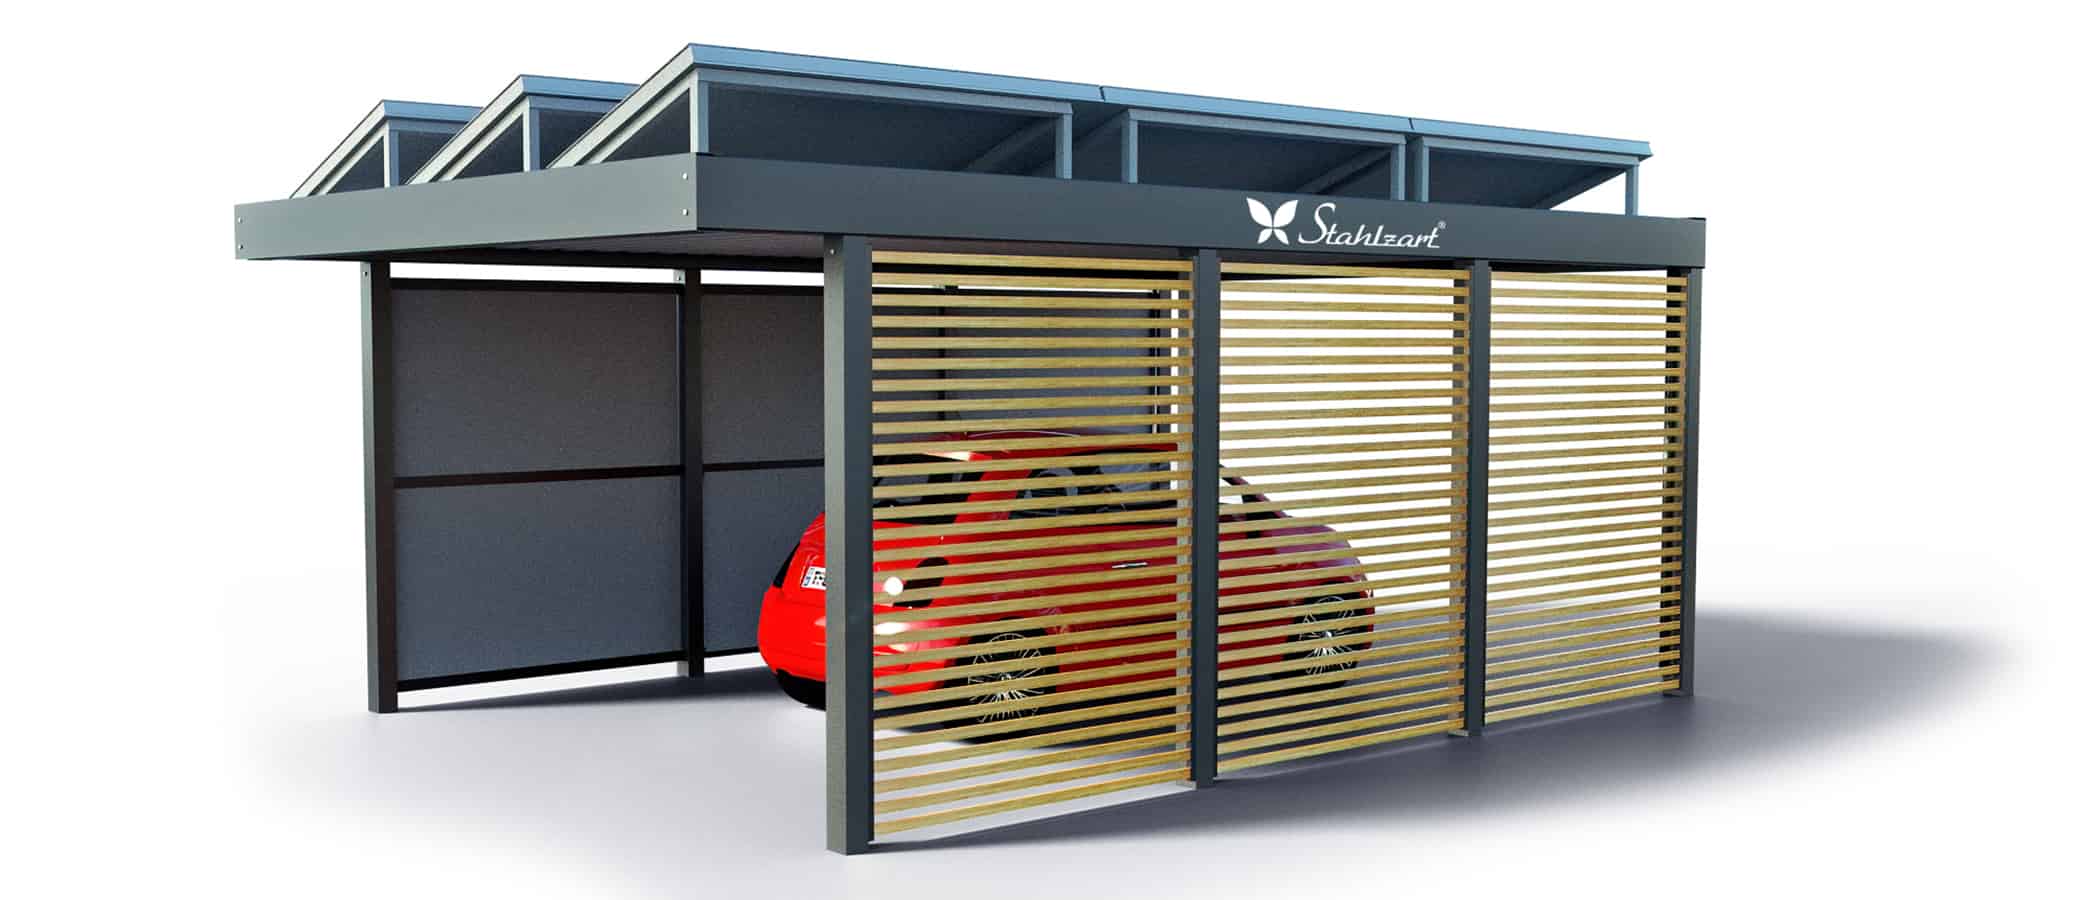 solar-carport-mit-flachdach-carports-pv-anlage-solaranlage-photovoltaik-garagen-garagendach-solarcarport-installation-seitenwand-solarmodulen-solarcarports-flaechen-dach-e-auto-fiat-laerche-stahlzart